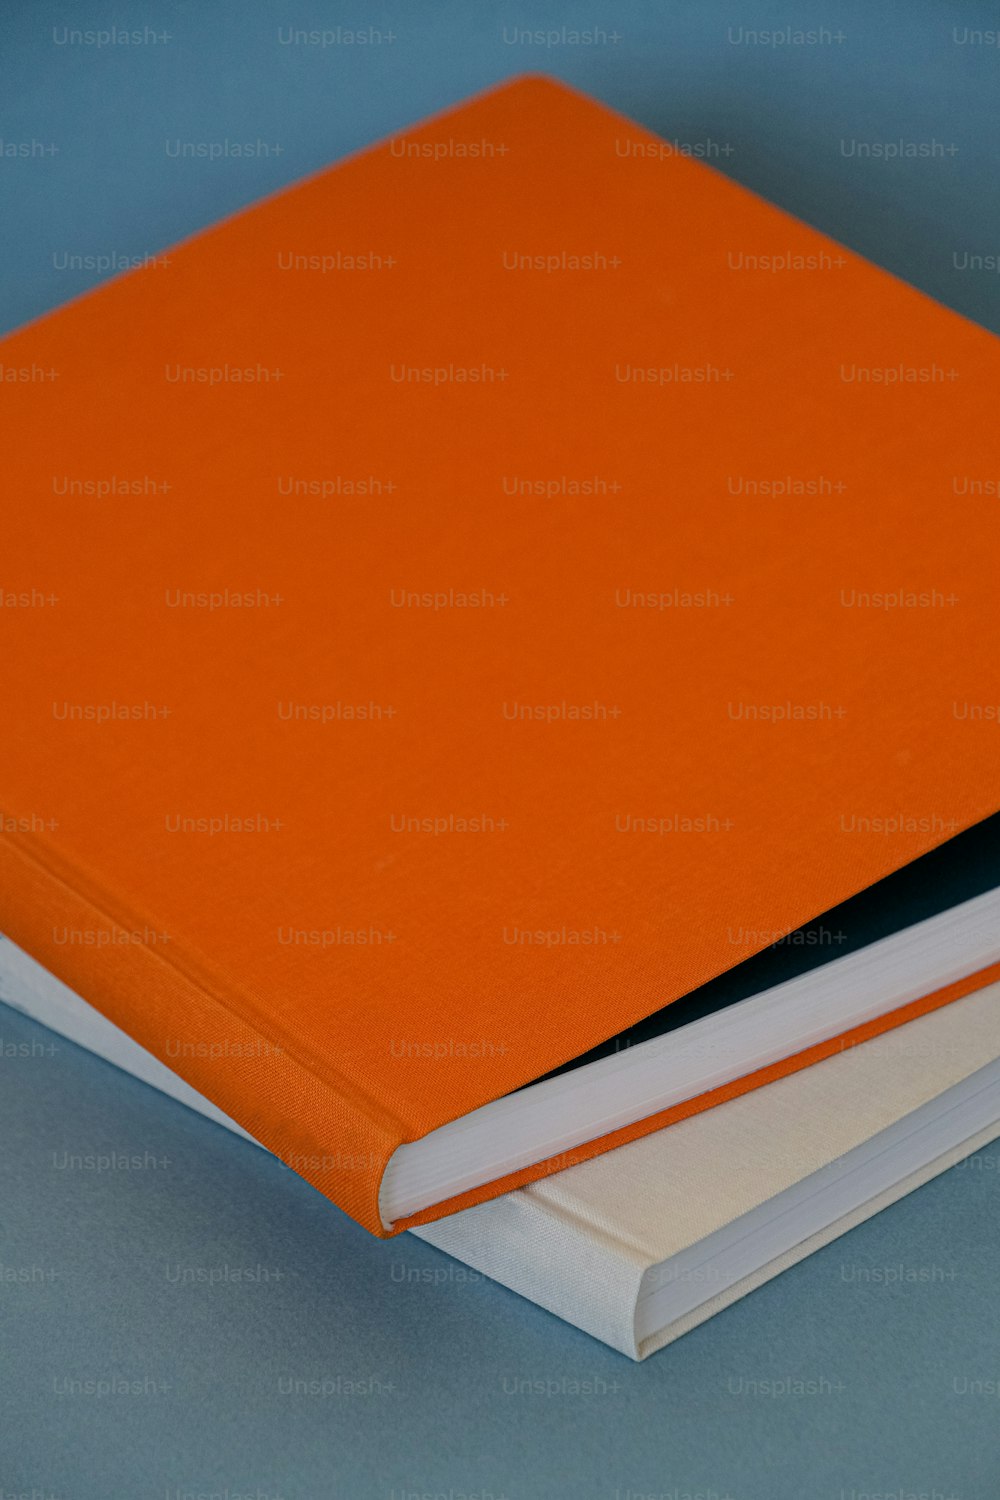 Ein orangefarbenes Buch, das auf einem blauen Tisch sitzt